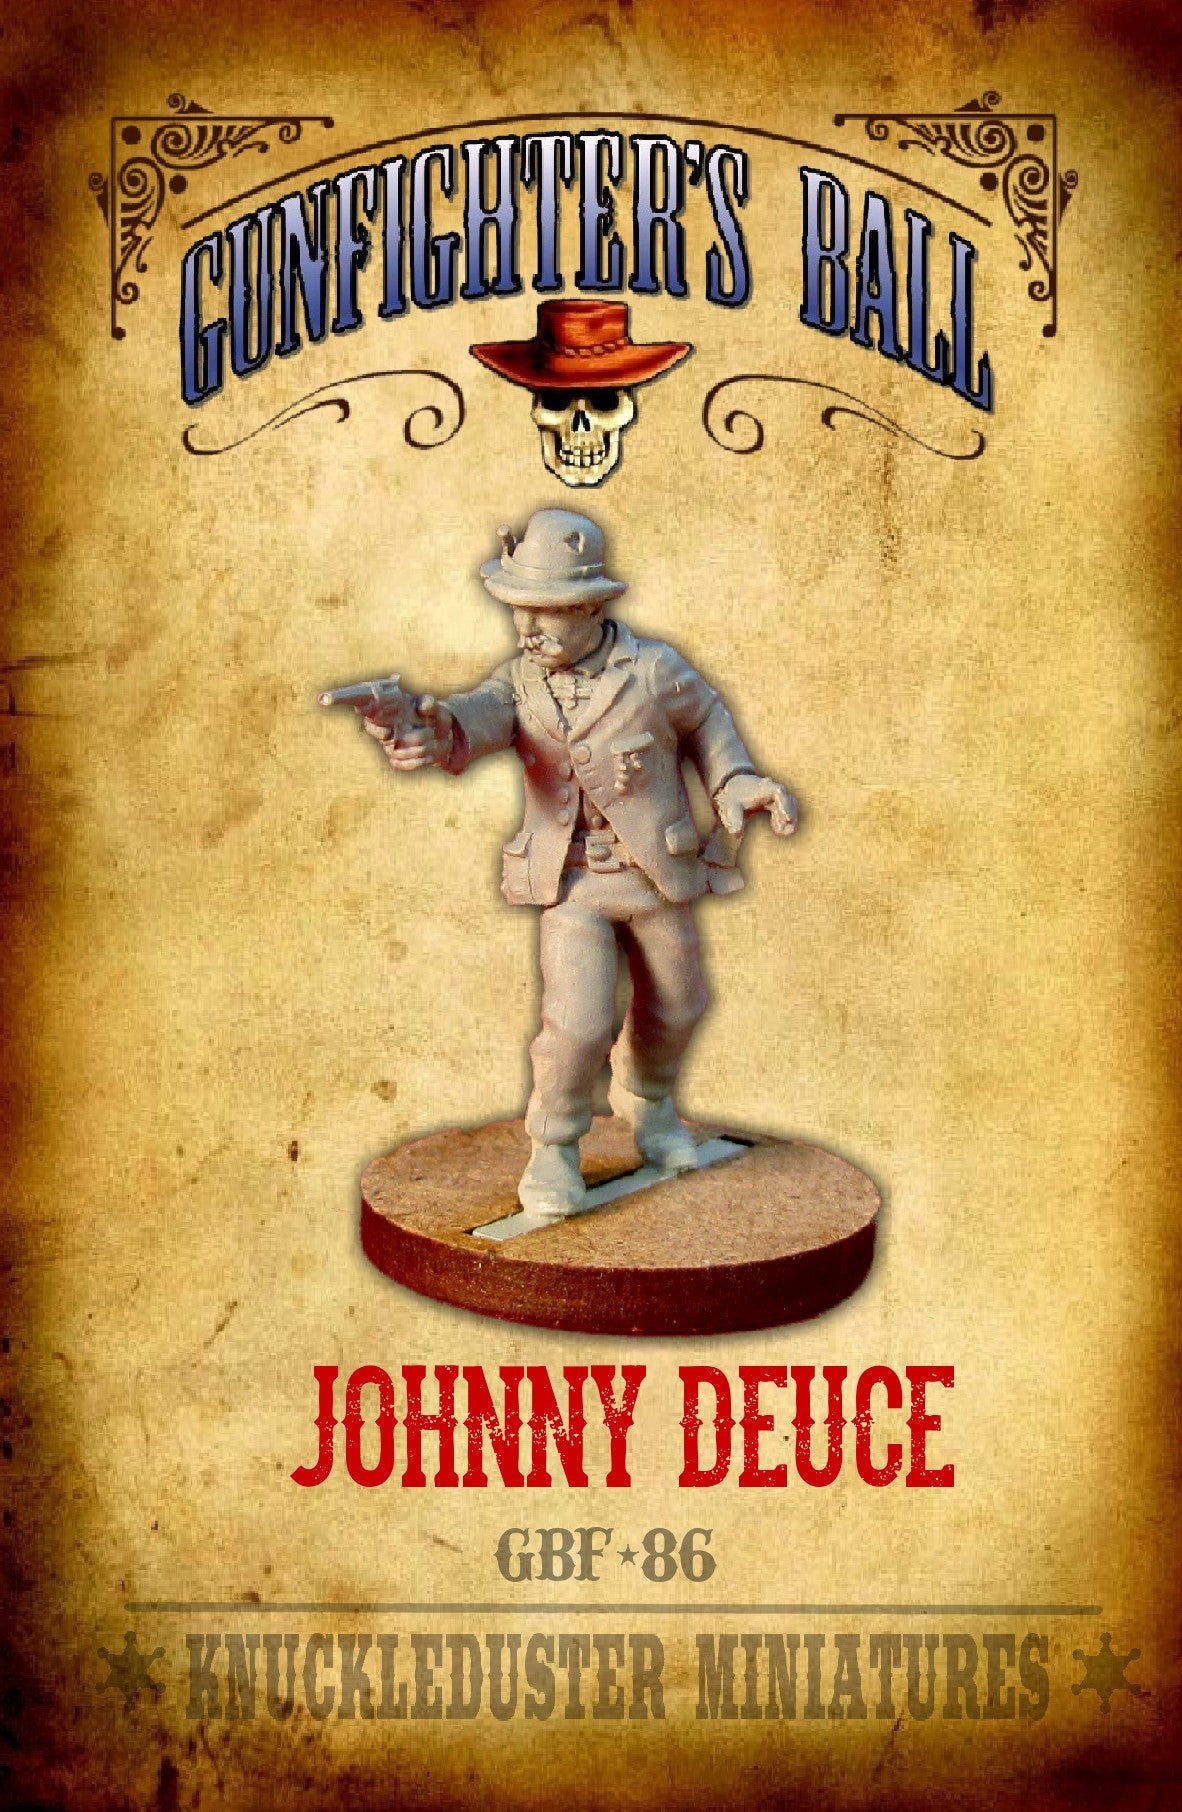 Johnny Deuce